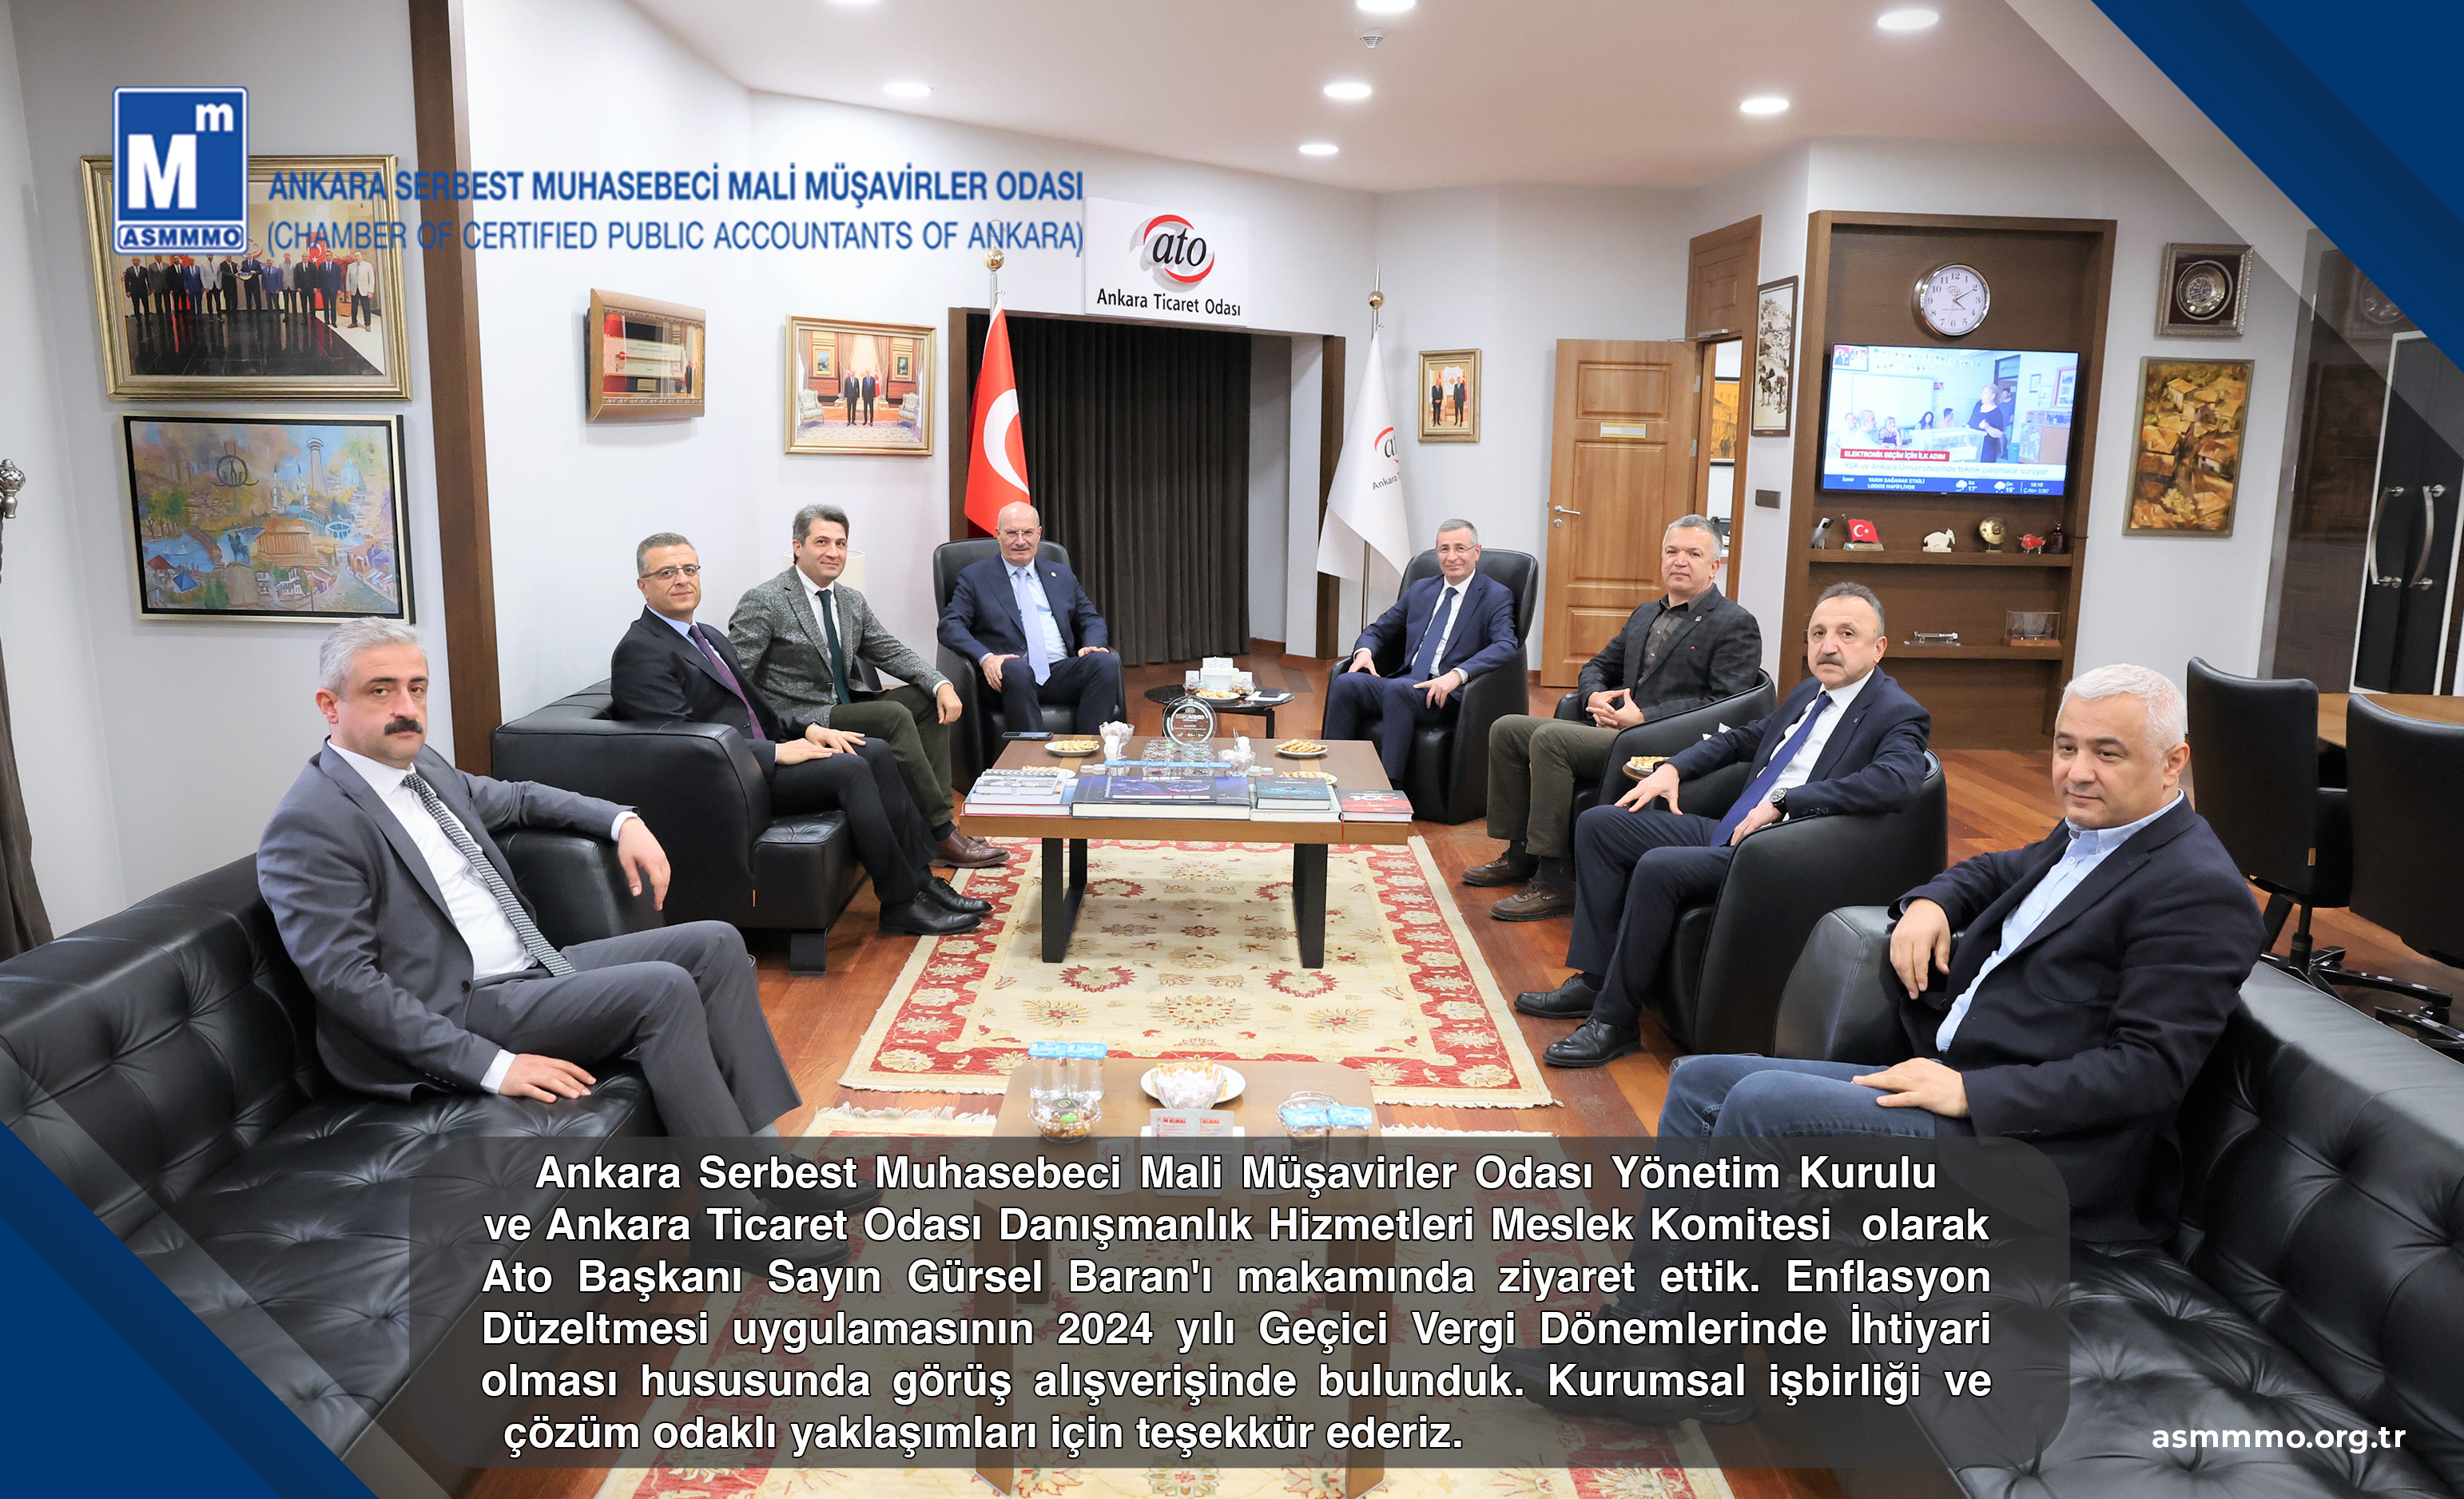 Ankara Ticaret Odası Başkanı Gürsel BARAN'ı Makamında ziyaret ettik